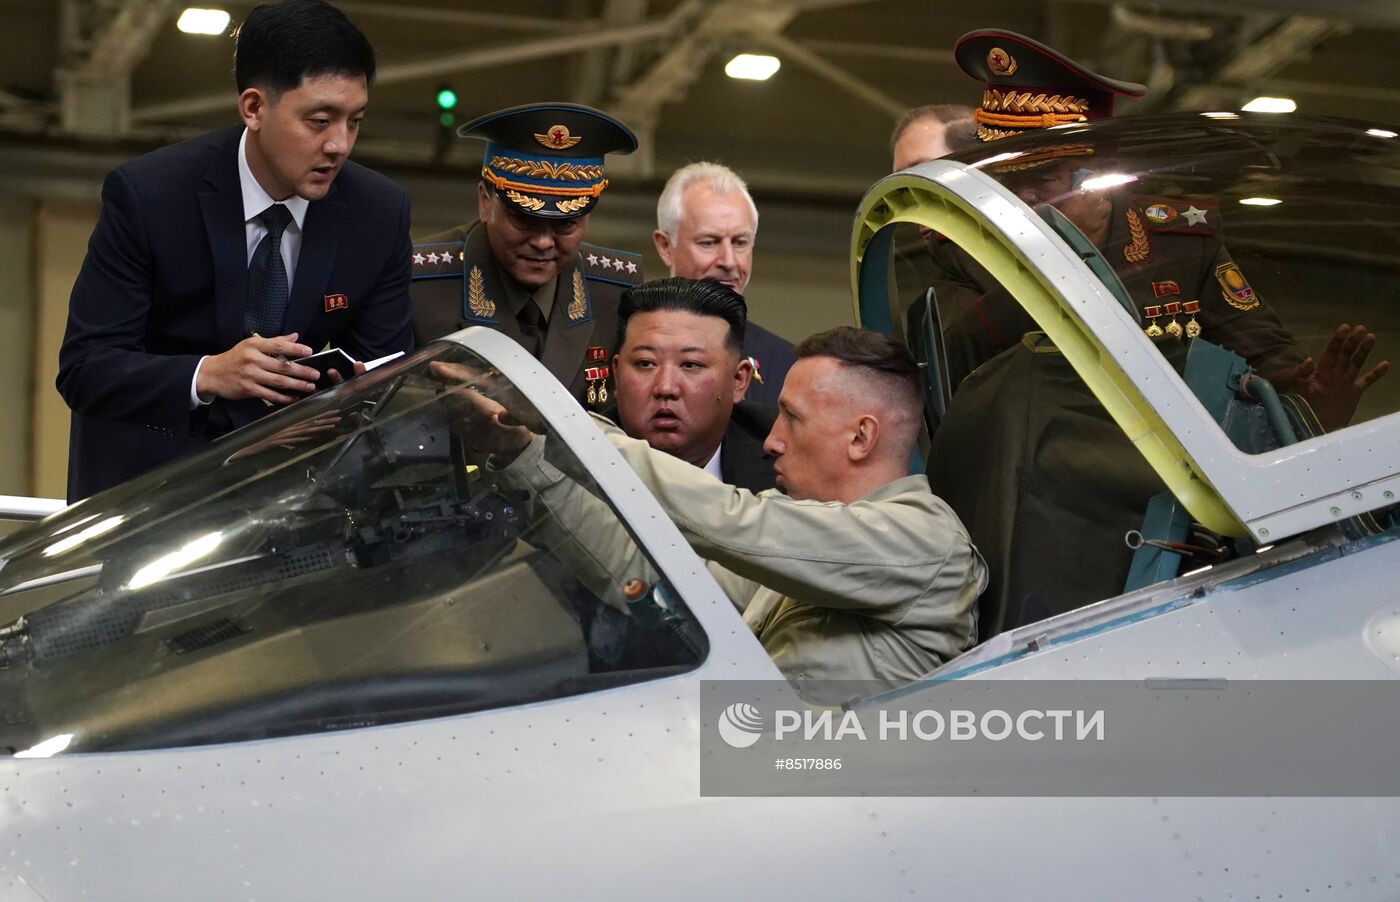 Визит лидера КНДР Ким Чен Ына в Комсомольск-на-Амуре